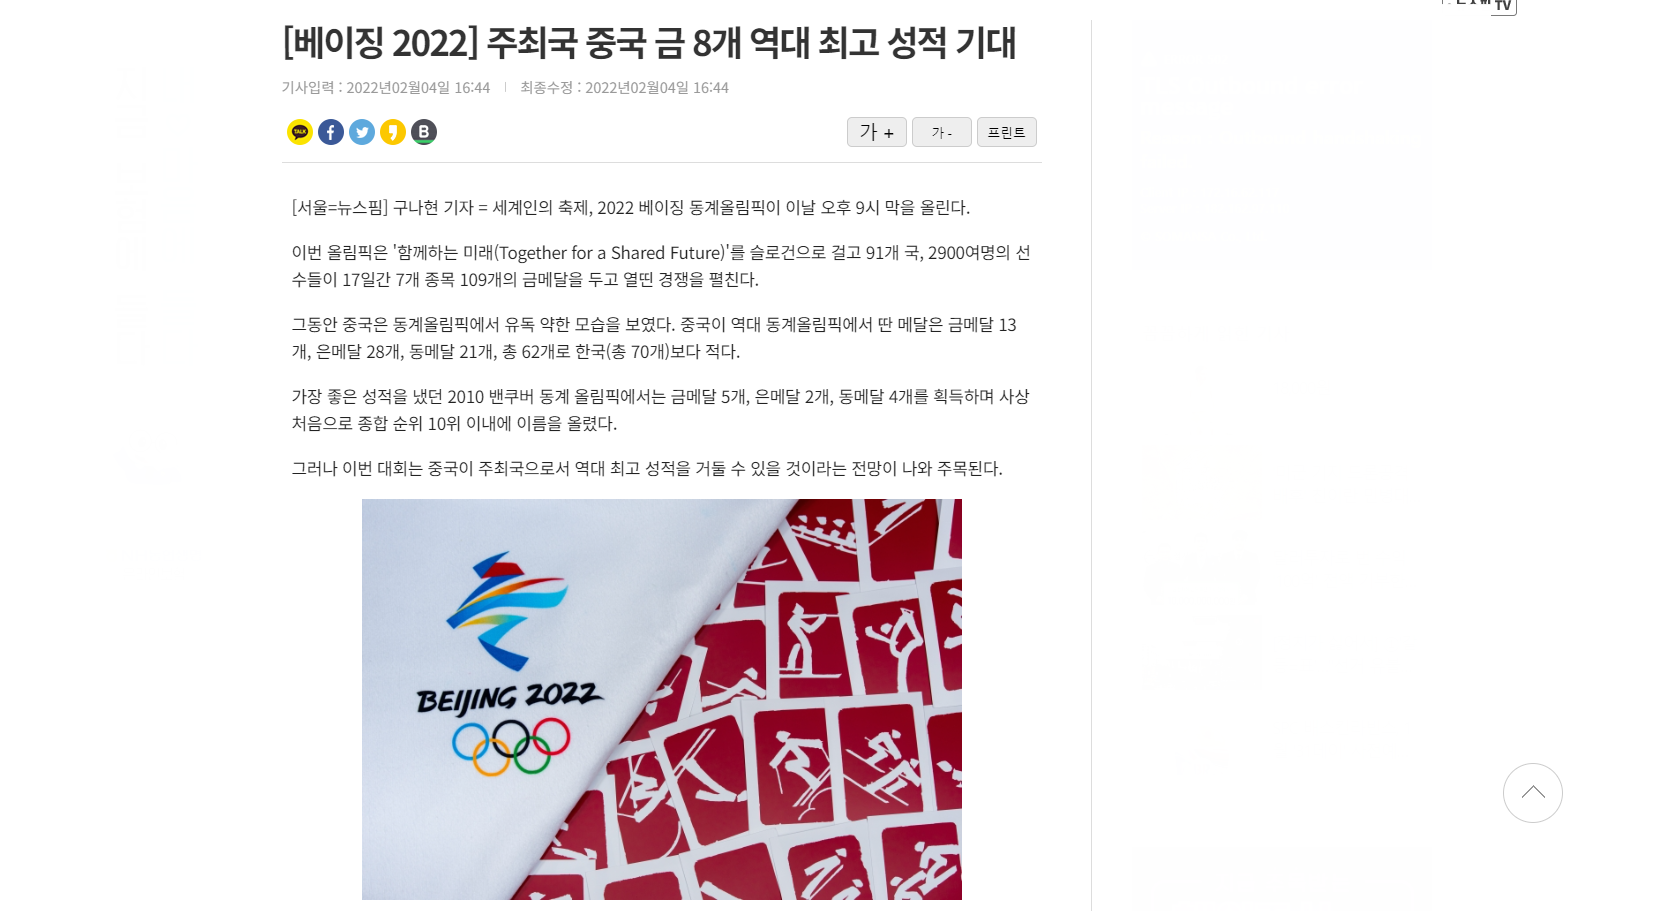 2022 베이징 동계올림픽 및 동계패럴림픽